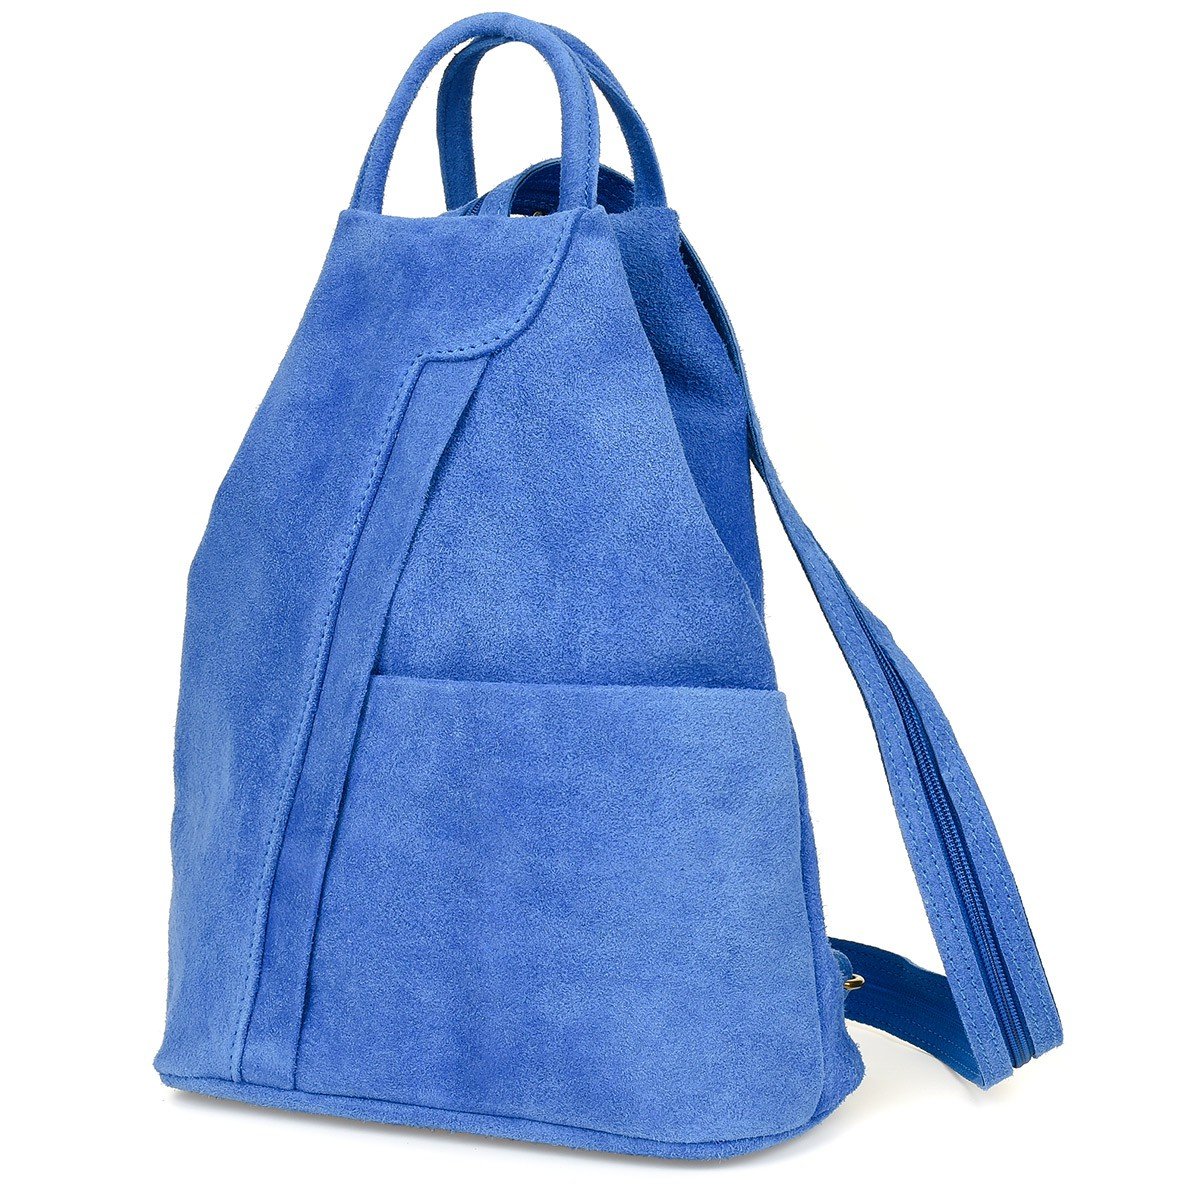 Фото - Жіноча сумка Vera Pelle Chabrowy  włoski Plecak Skórzany damski mały T53 niebieski 